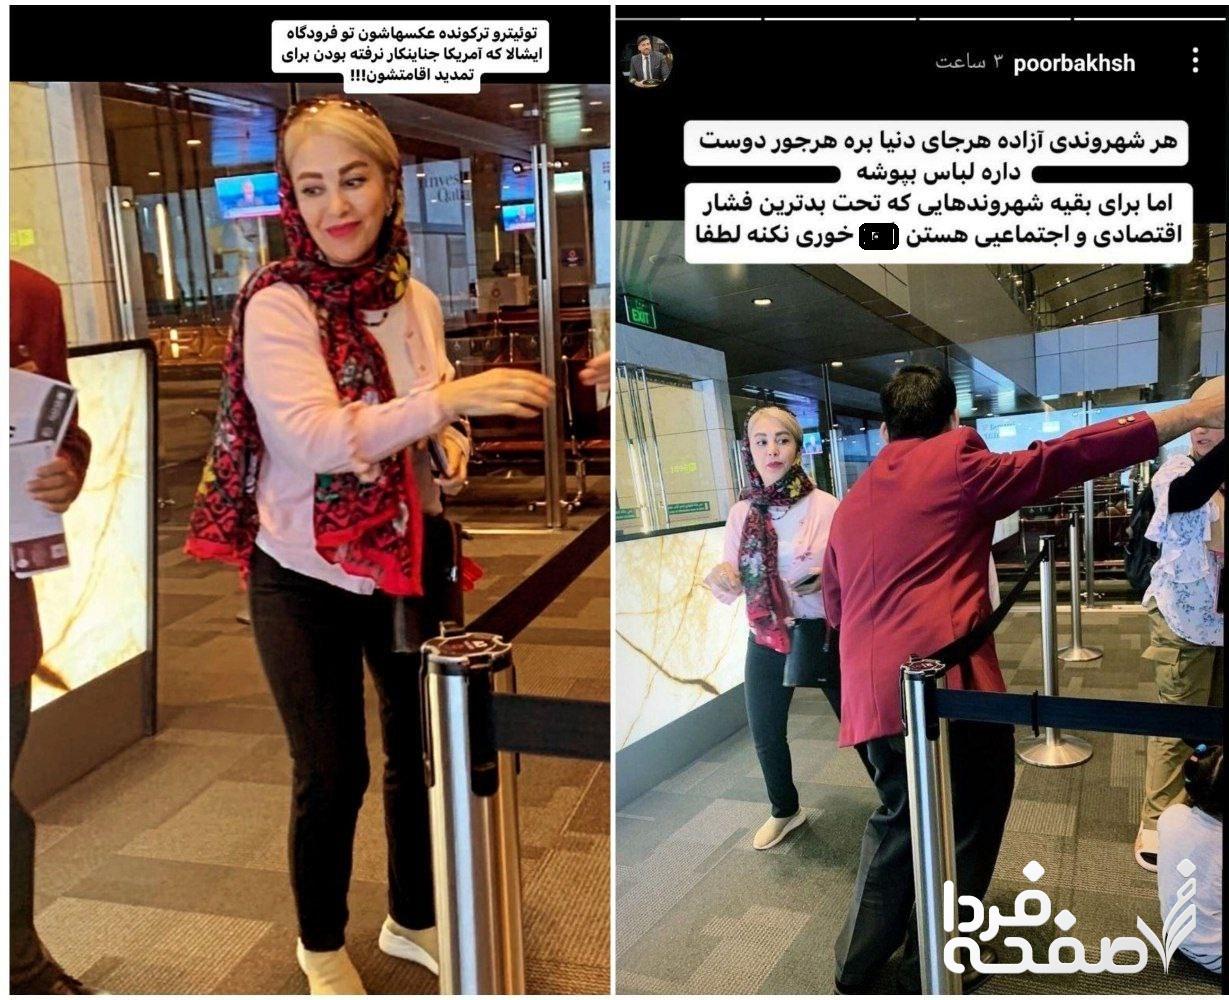 واکنش مجتبی نوربخش مجری سابق تلویزیون درباره سفر ژیلا صادقی به امریکا!